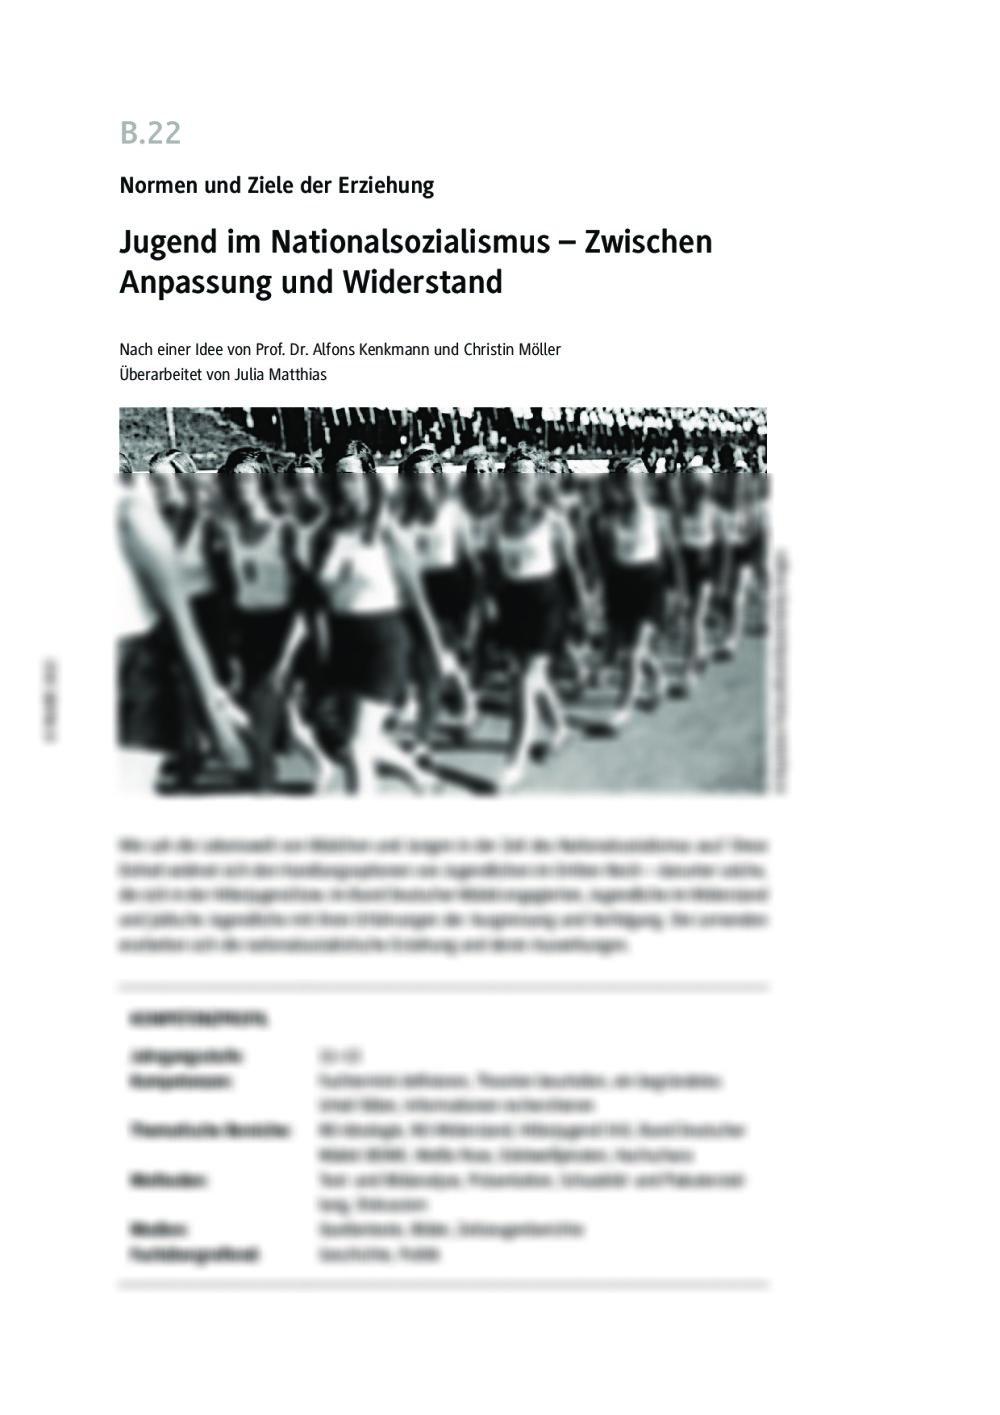 Jugend im Nationalsozialismus - Seite 1